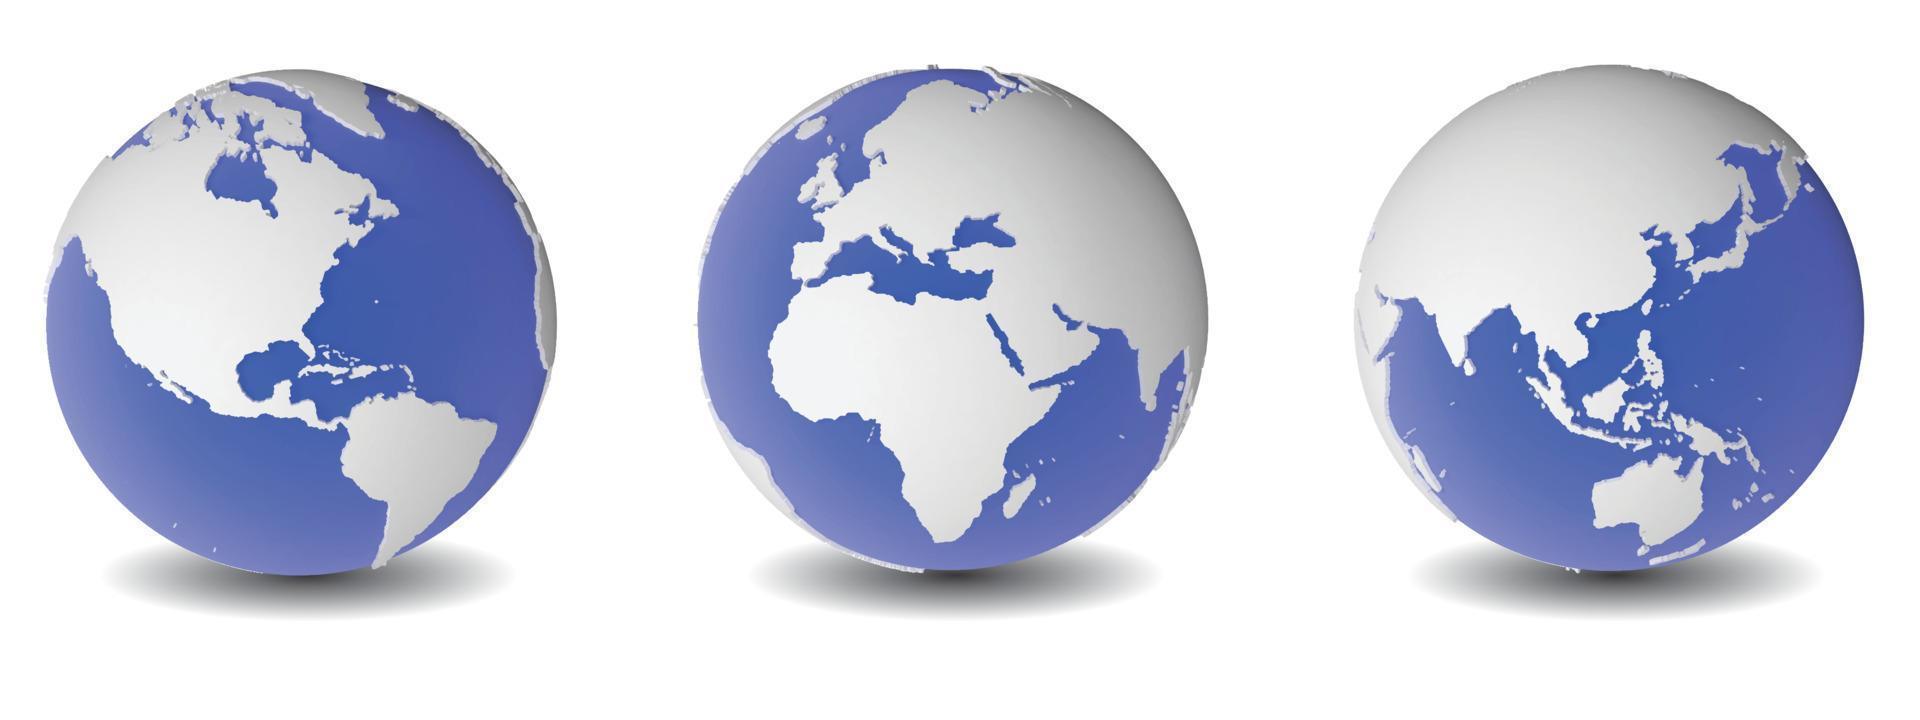 le globe mondial est une icône vectorielle. terre isolée sur une illustration de fond blanc. sur un fond blanc, un groupe de globes terrestres. vecteur